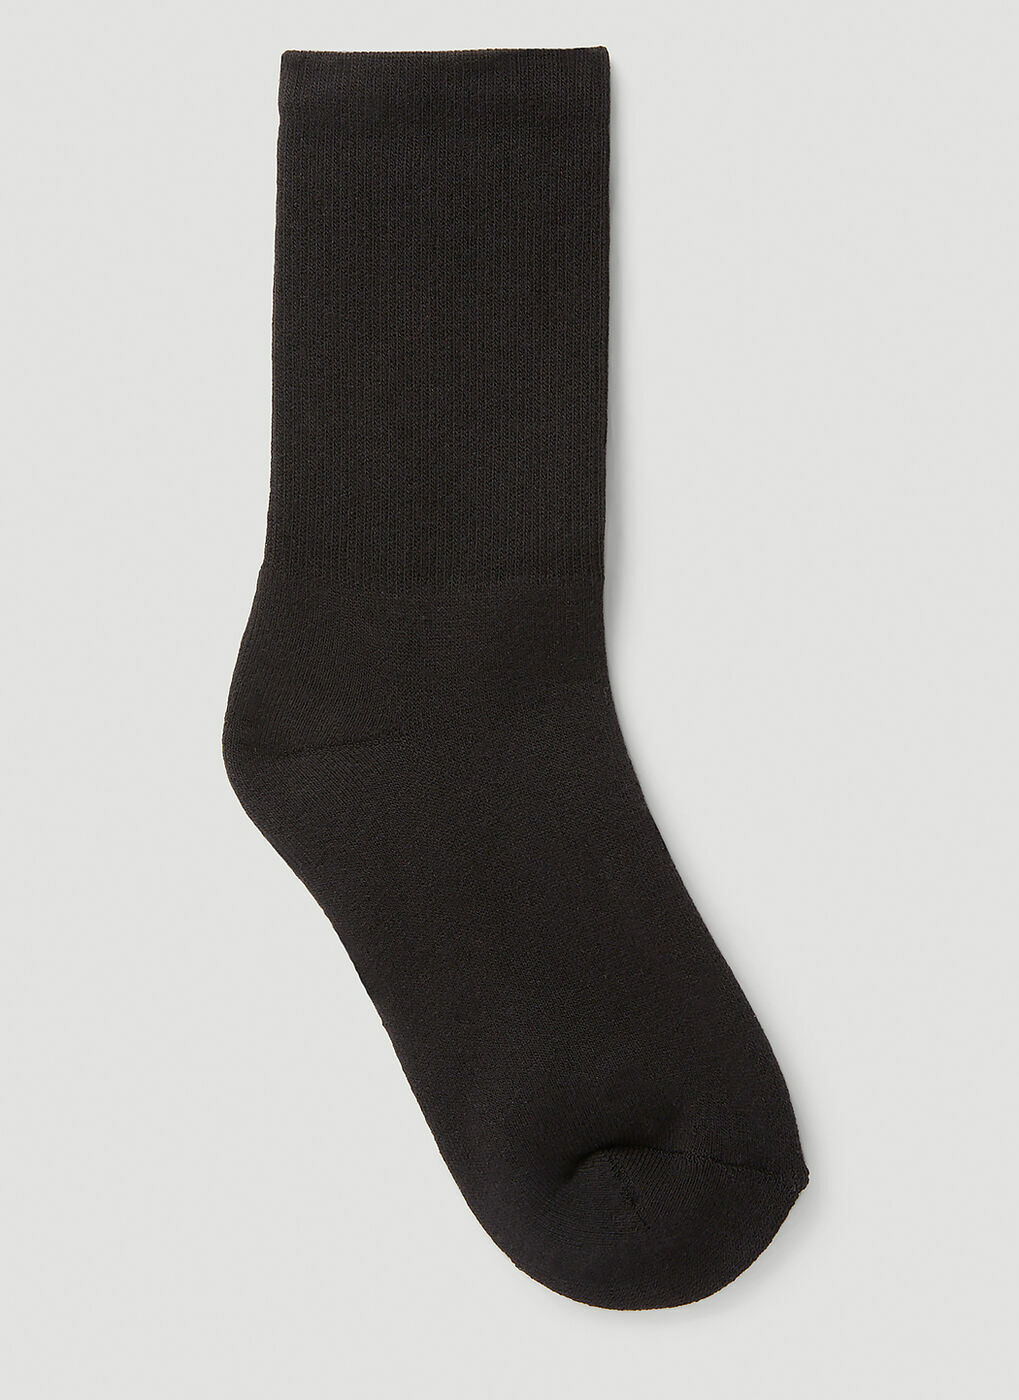 Lightercap Socks in Black